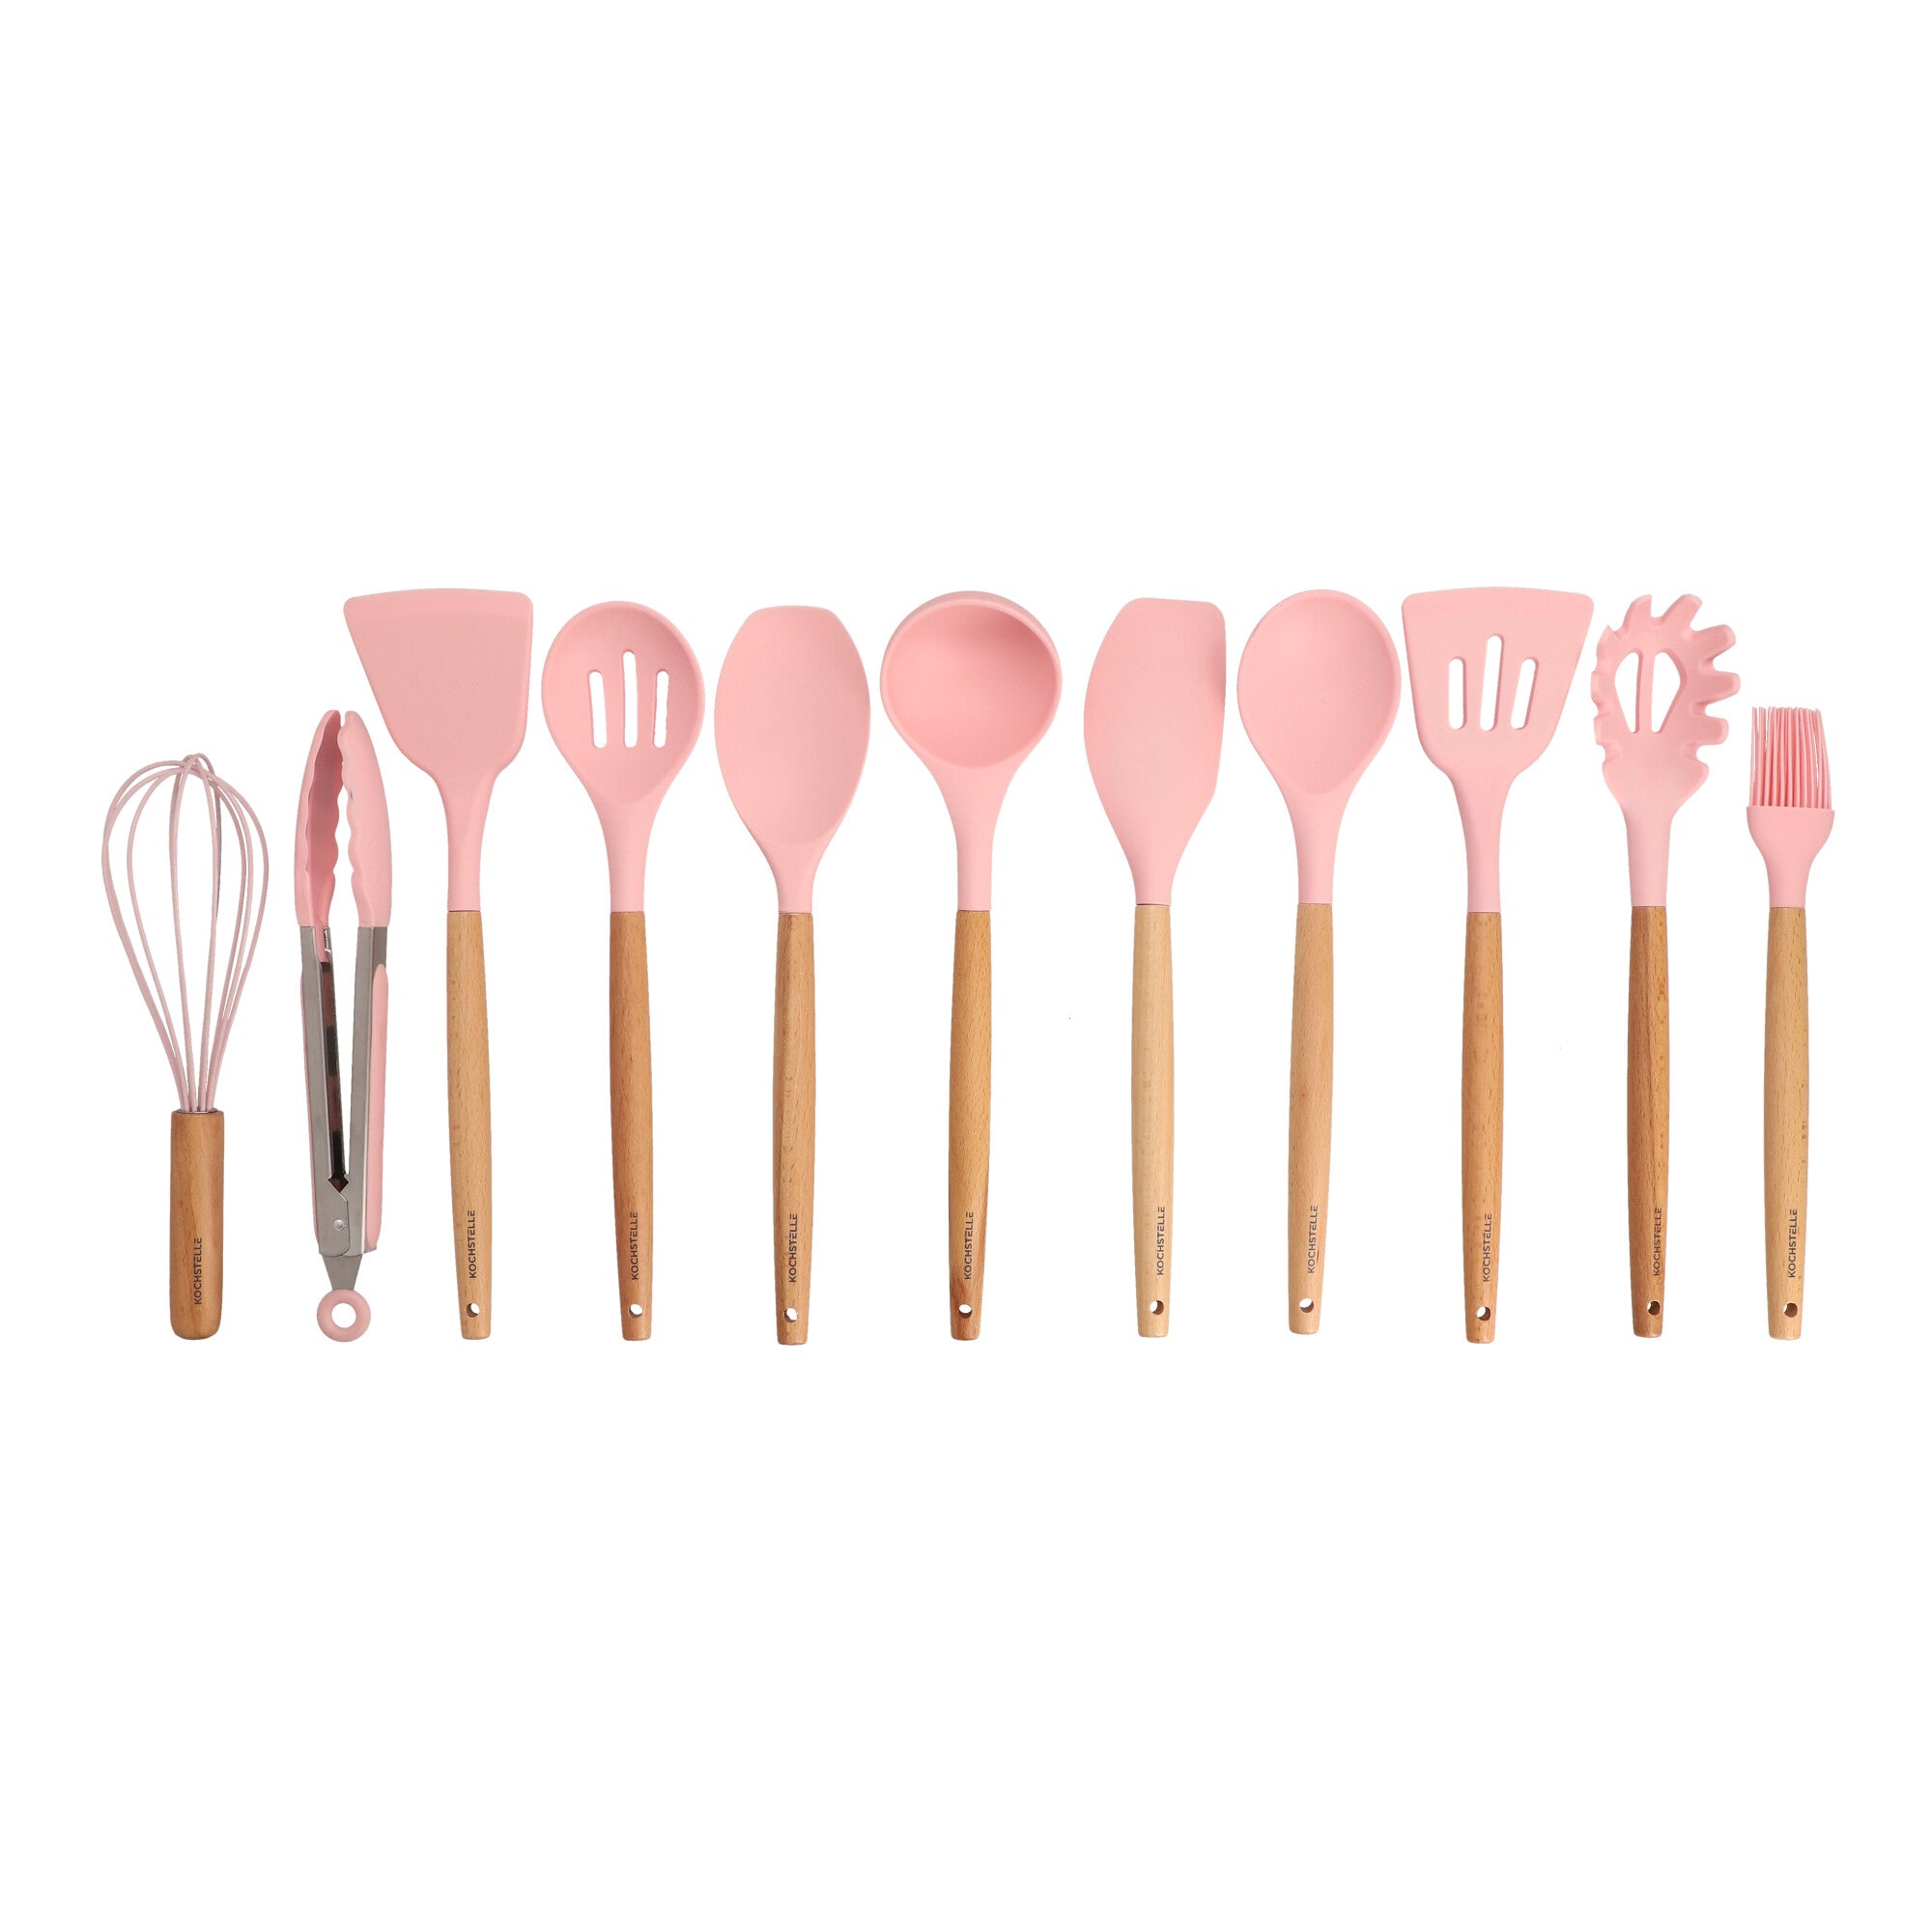 Set cucharones utensilios cocina de silicona 12 piezas rosado MAH HOGAR